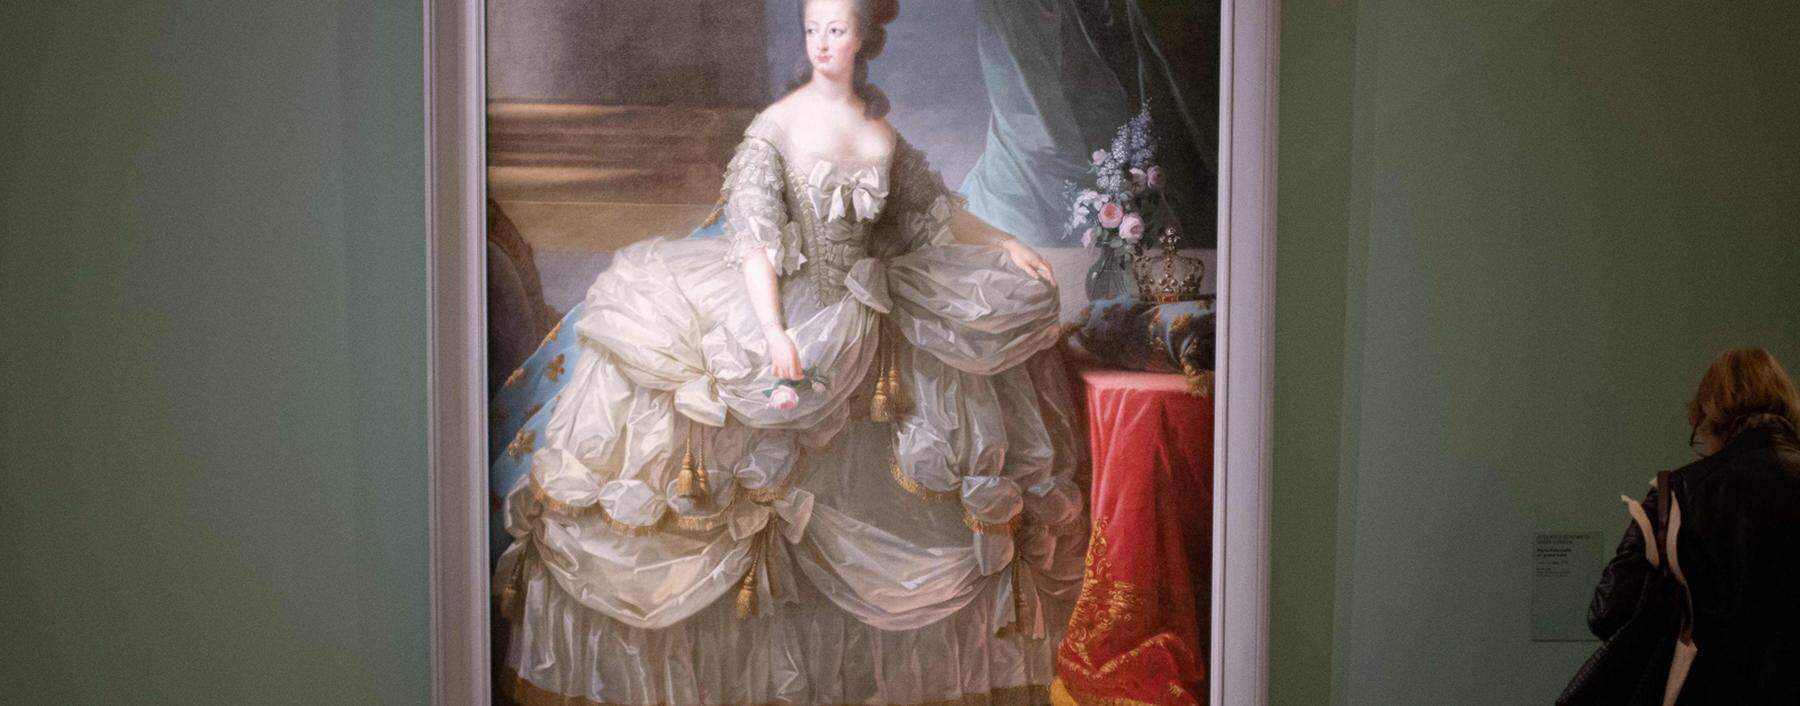 Königin Marie-Antoinette ließ sich von der Malerin ?lisabeth Vigée-Lebrun gern genehm in Szene setzen.